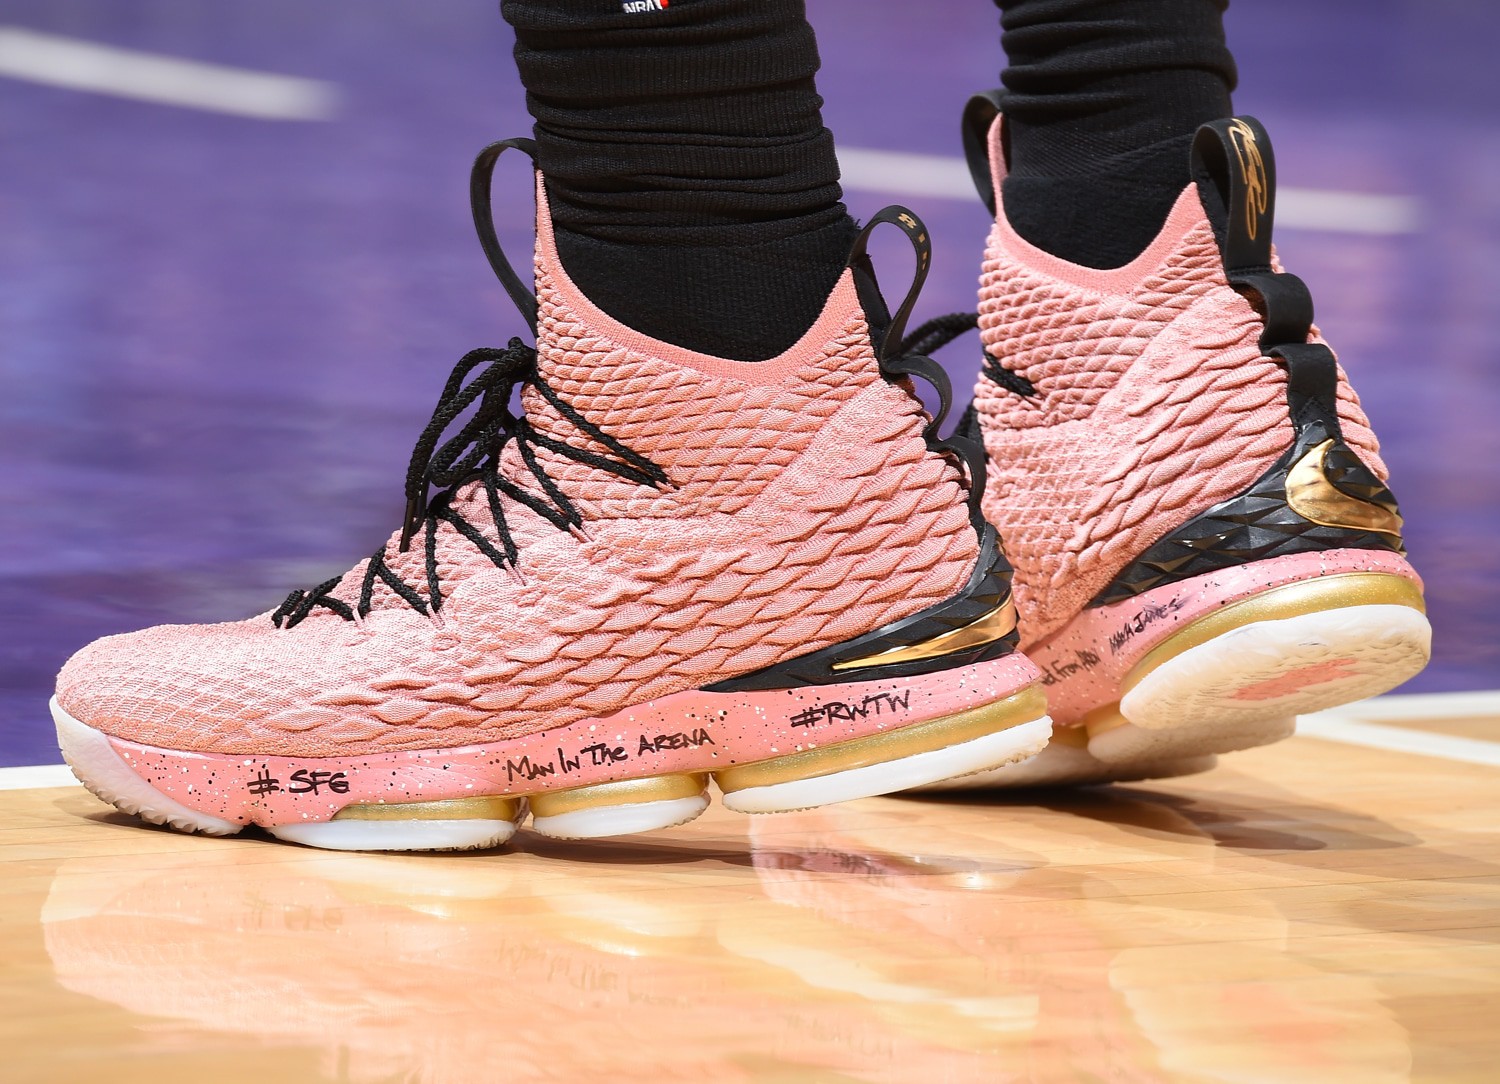 Giới yêu giày hãy sẵn sàng, NBA vừa cho các cầu thủ chơi giày thoải mái từ mùa giải tới - Ảnh 2.